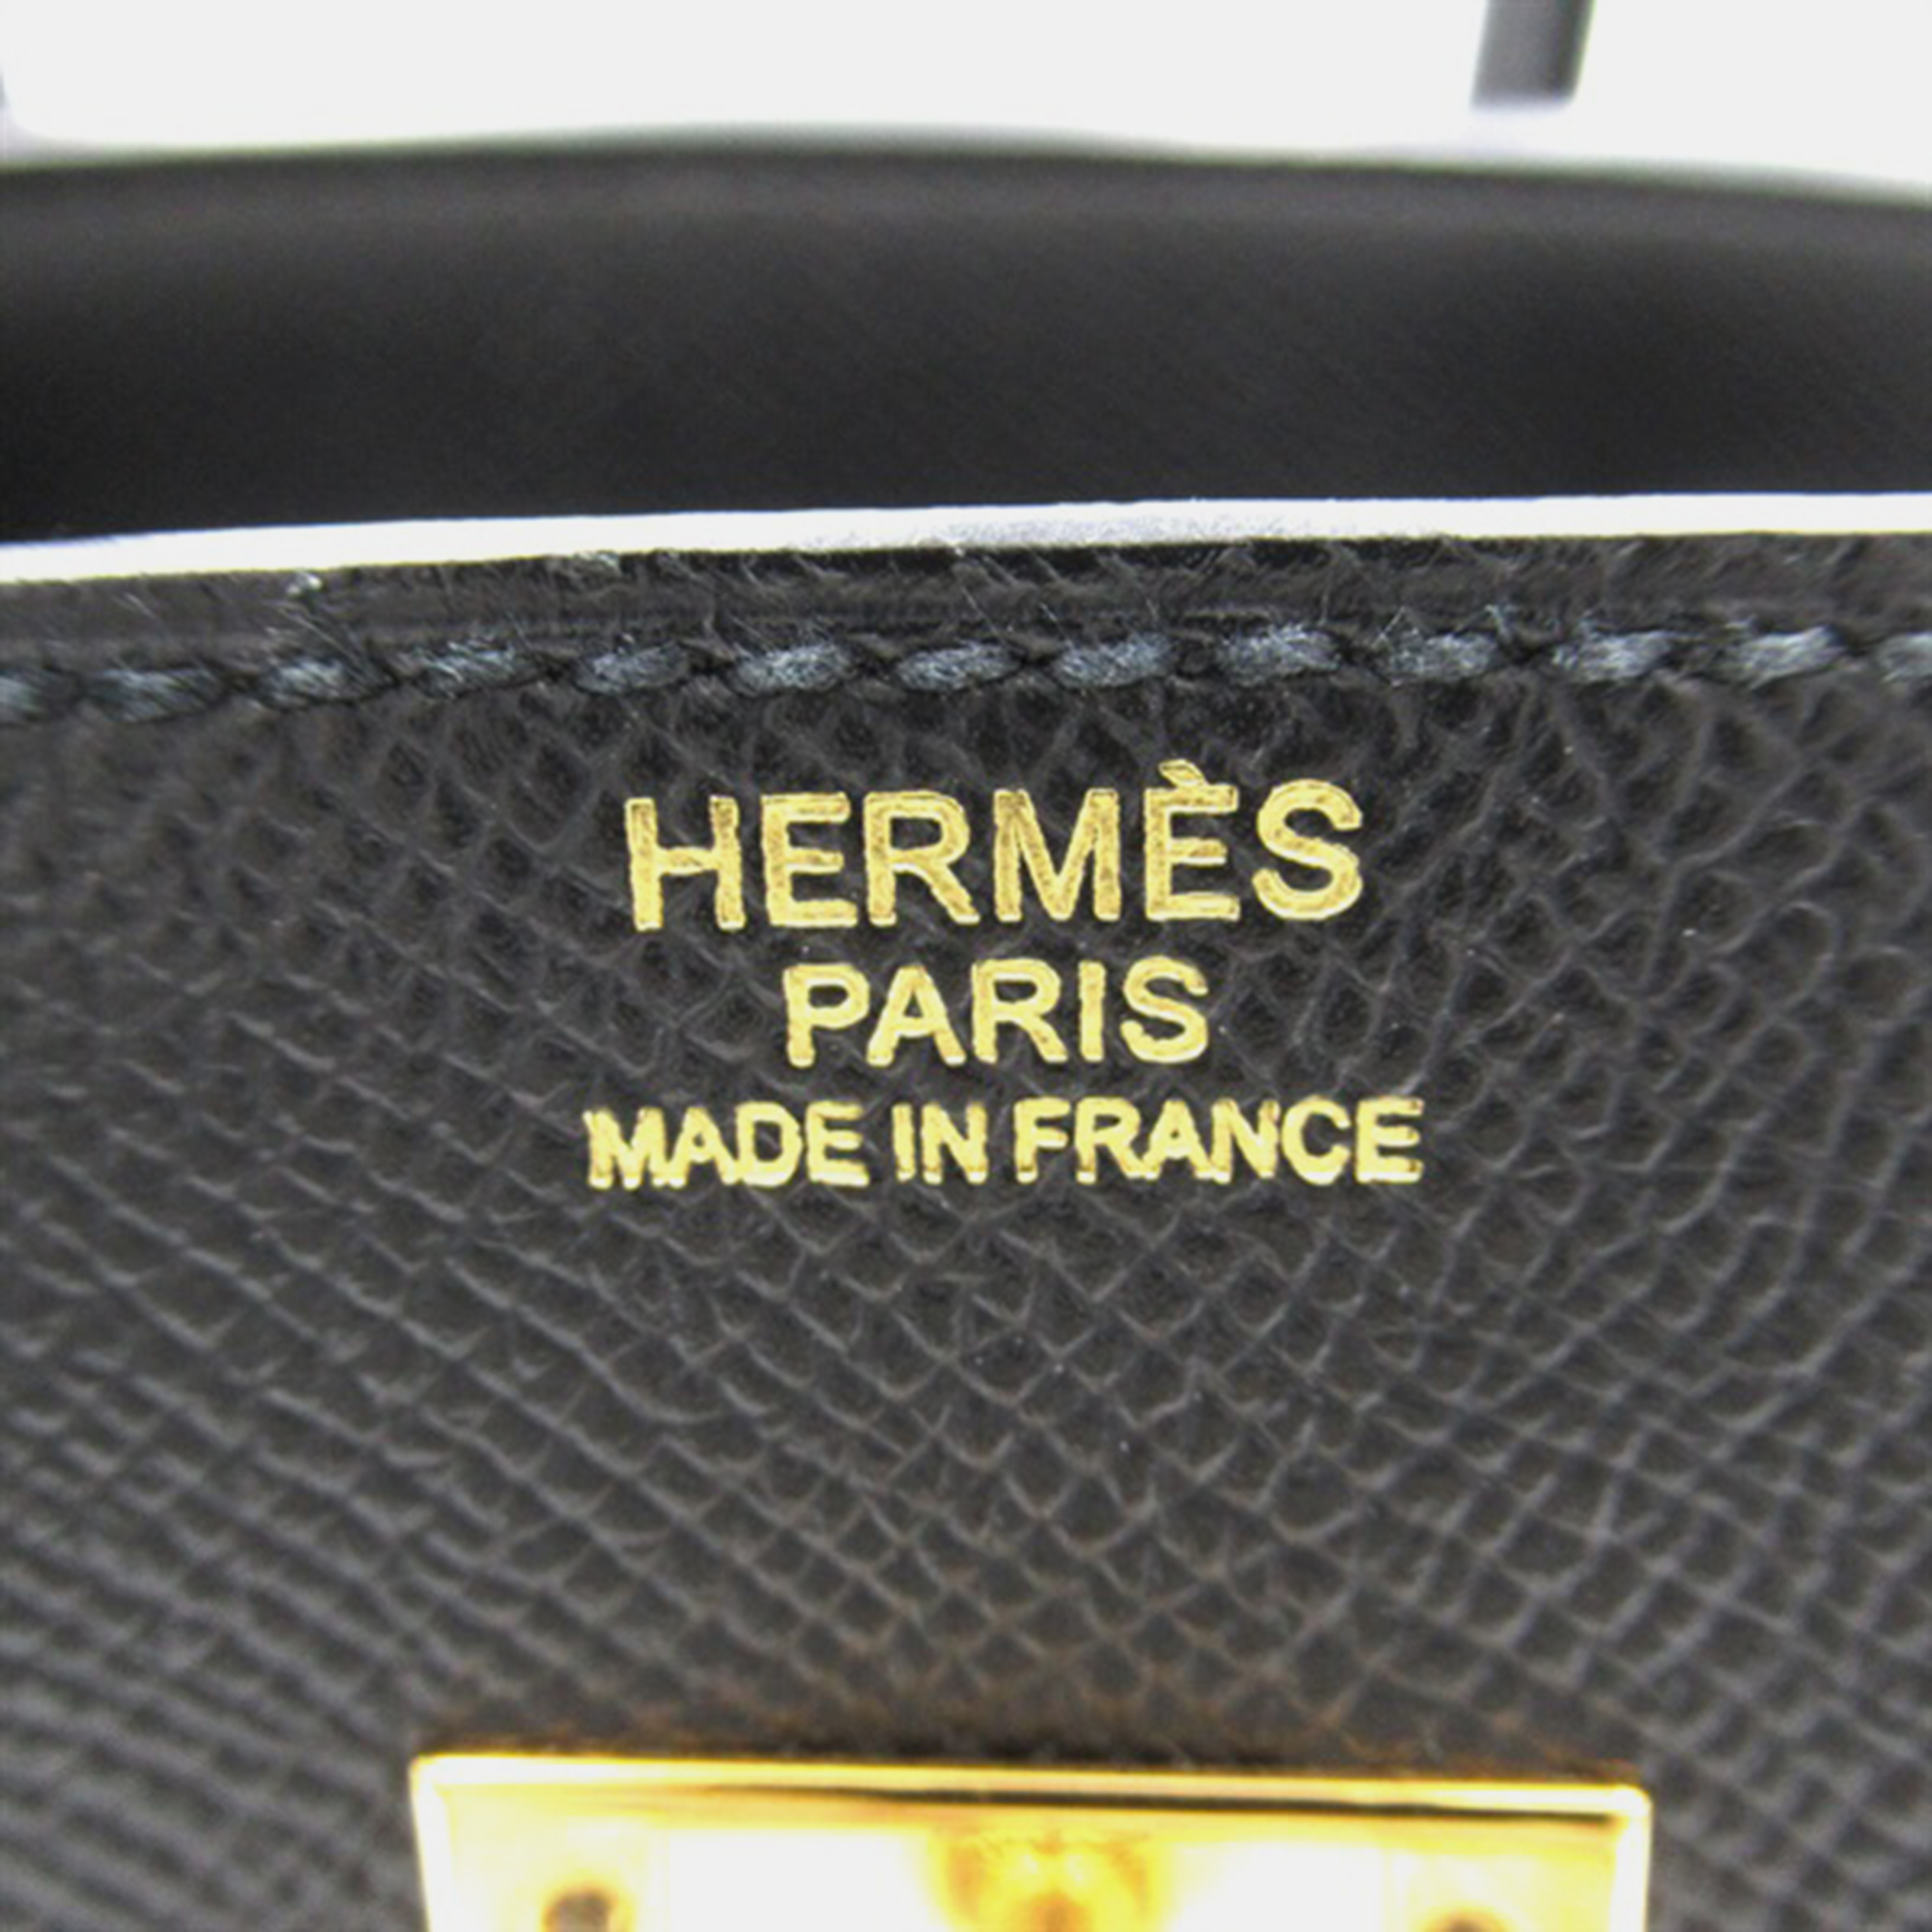 Hermes Black Togo Leather Birkin 30 Tote Bag